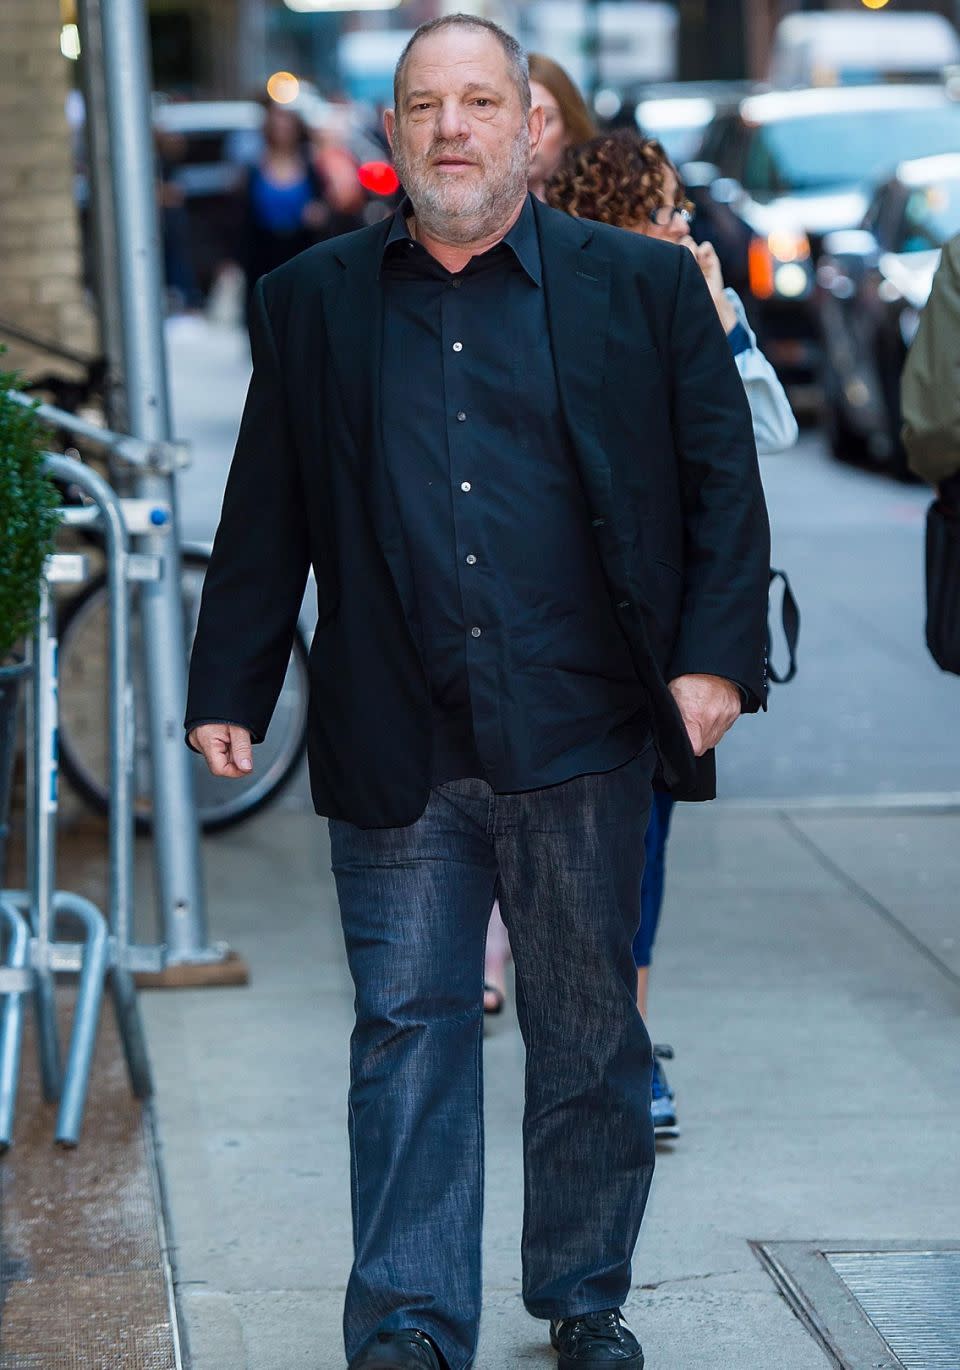 Weinstein pictured in New York last month. Source: Getty